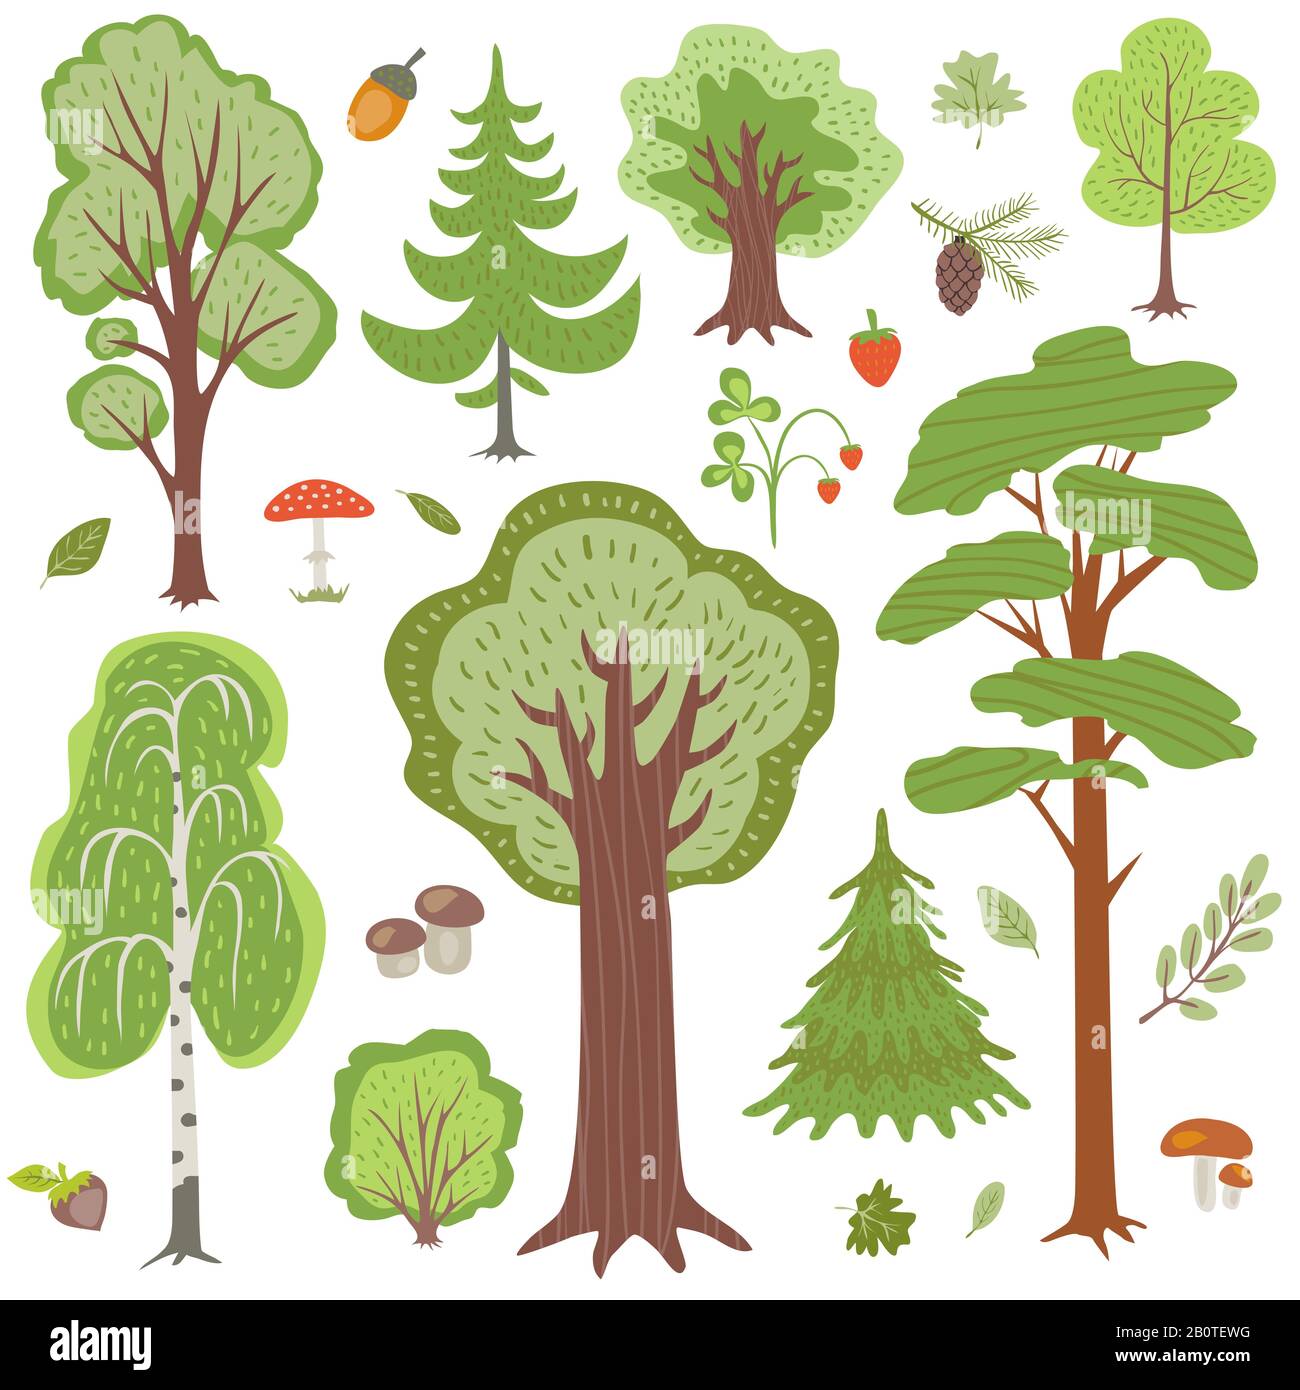 Arbres forestiers, plantes et champignons, autres éléments vectoriels floraux boisés. Arbre floral, illustration des champignons et des arbres en bois Illustration de Vecteur